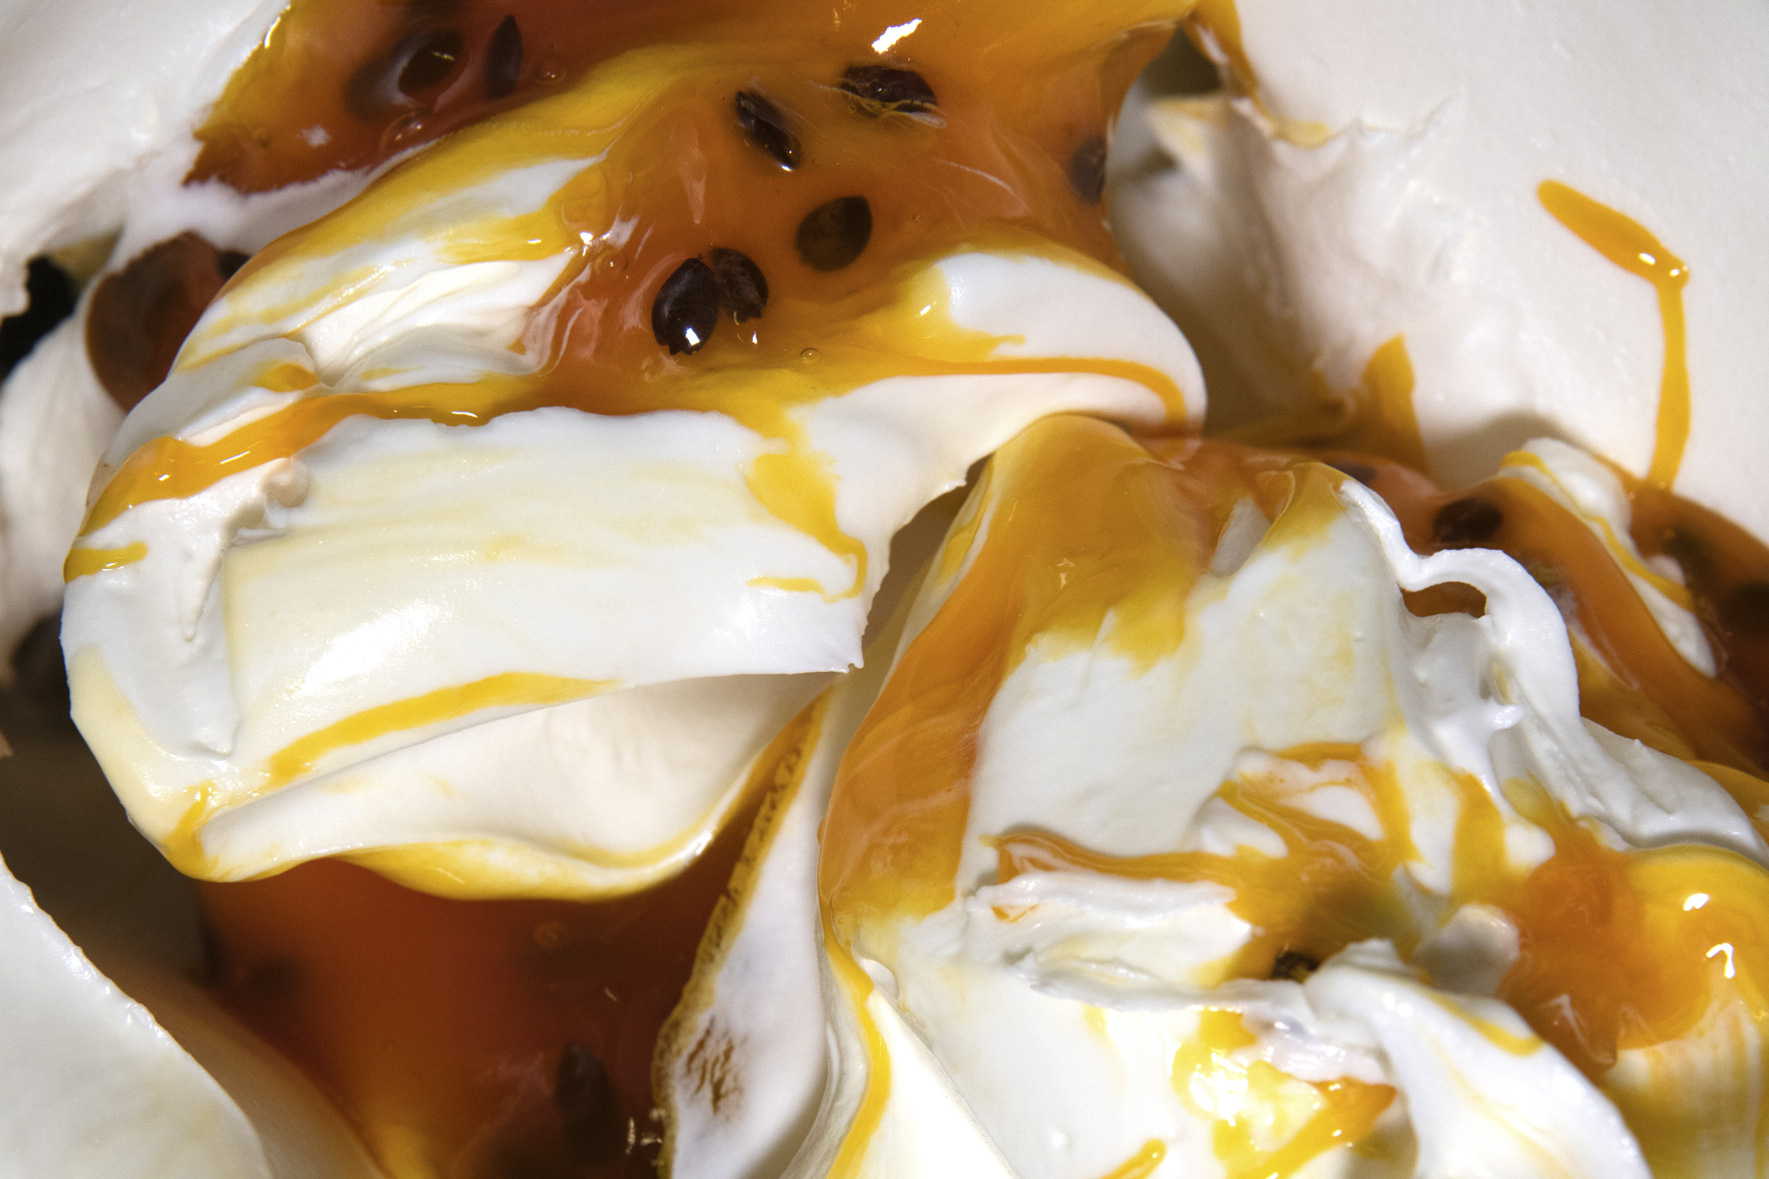 gelato artigianale allo yogurt variegato al passion fruit